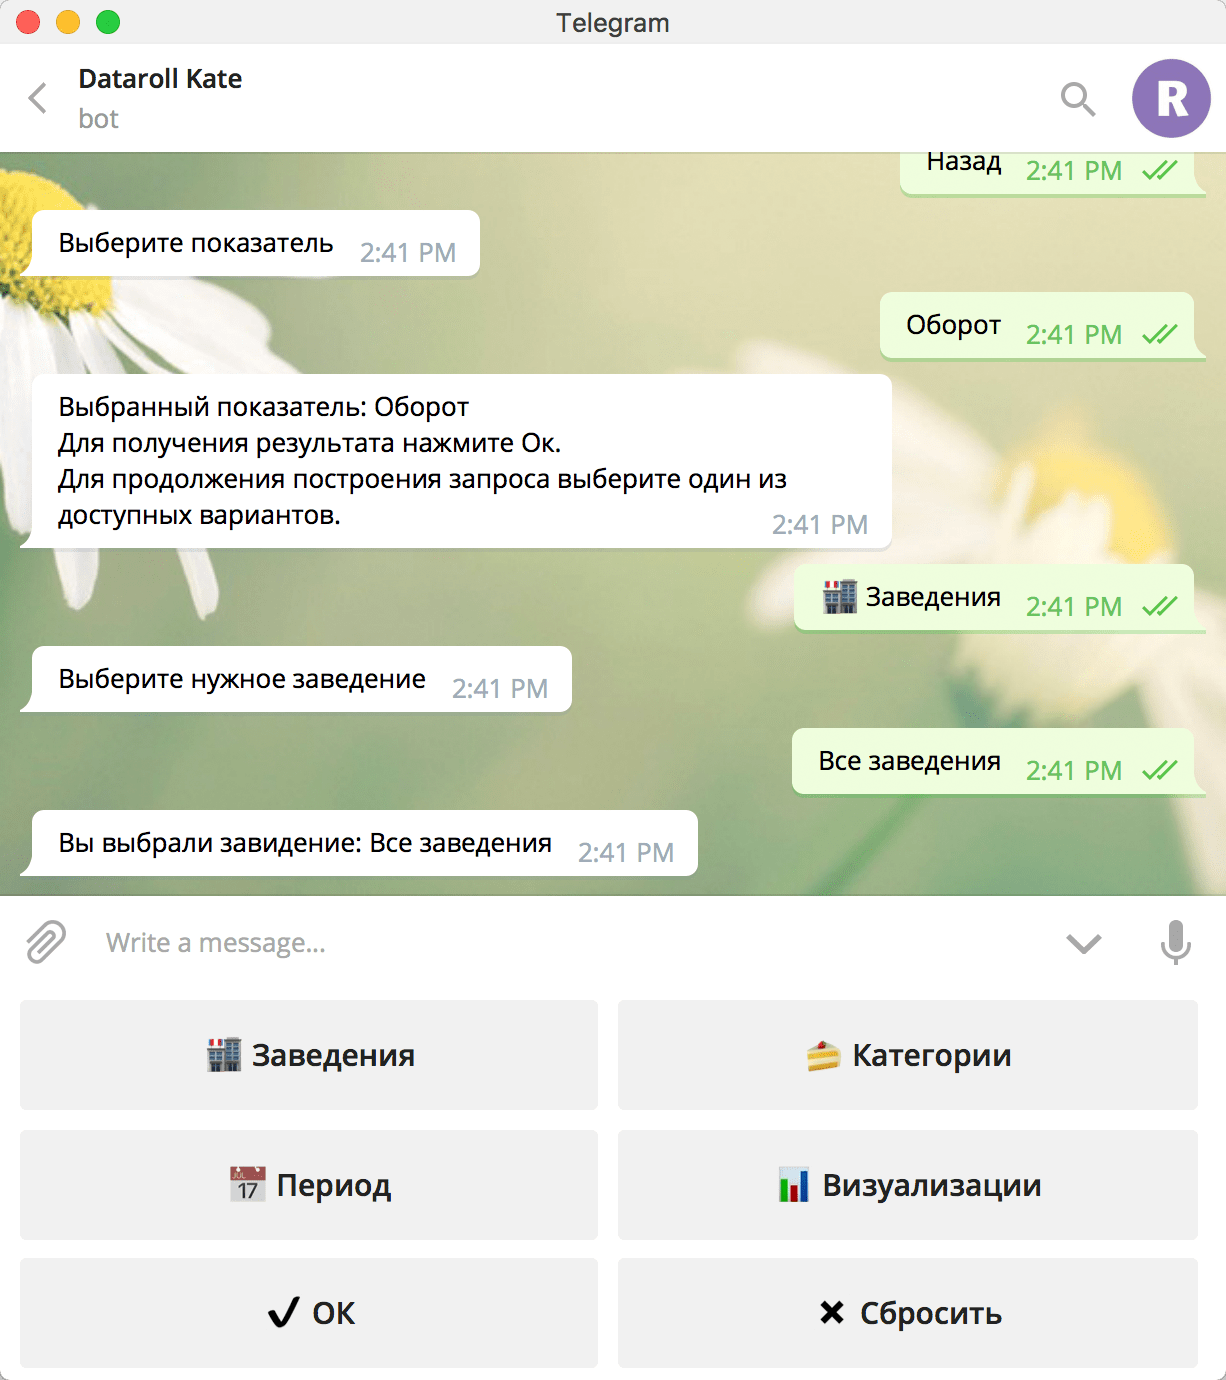 Основные показатели продаж в Telegram-чате.